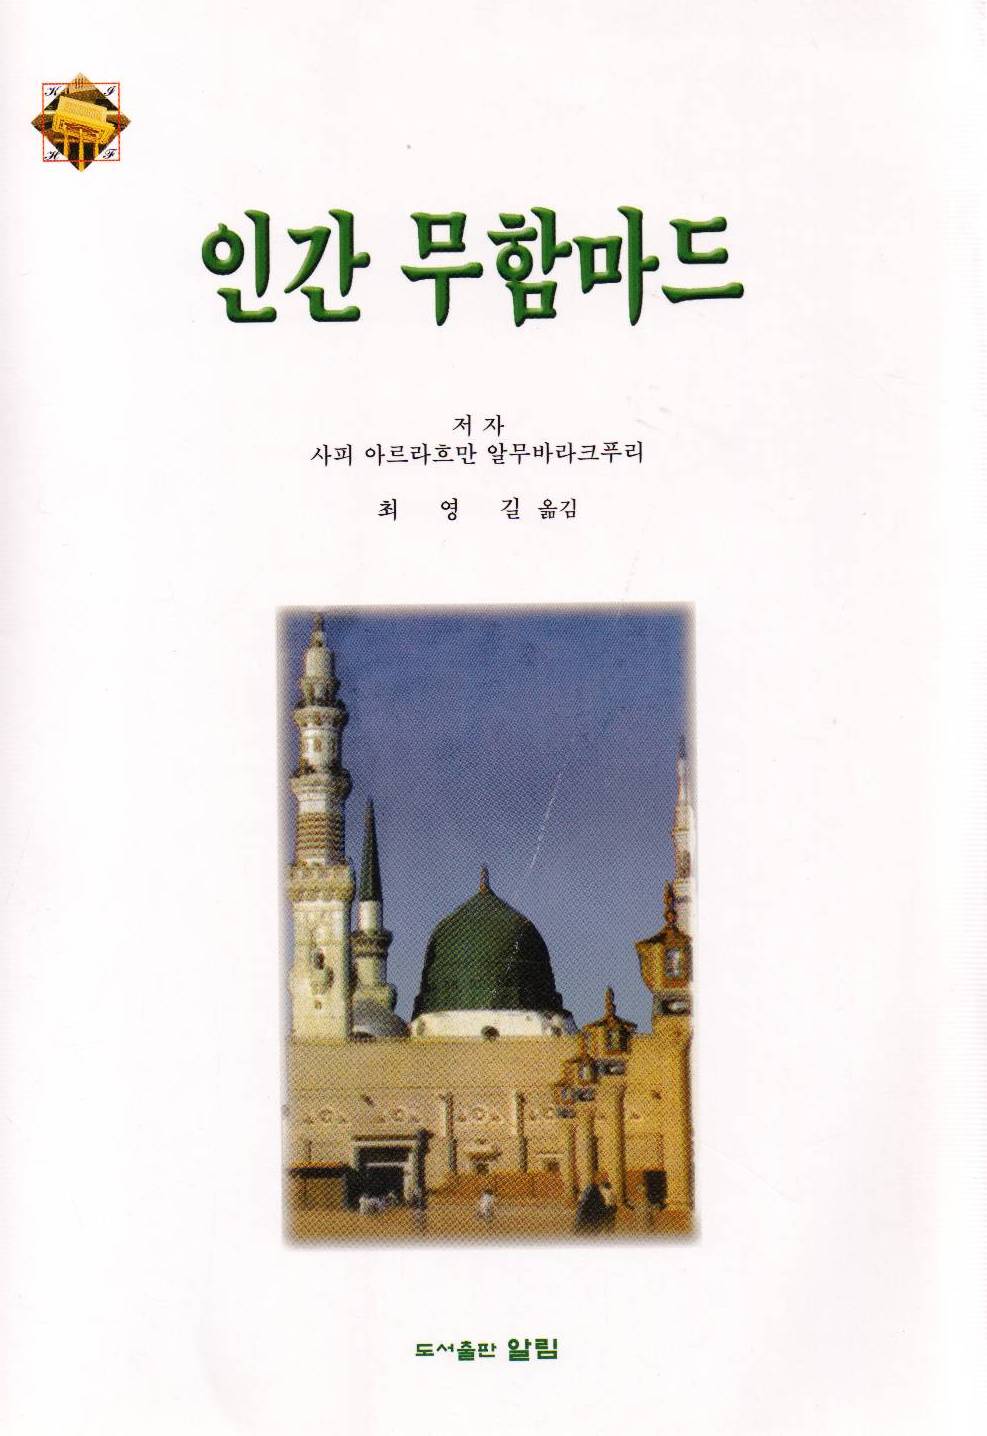 ( النبي محمد )، إلى اللغة الكورية عن كتاب/ الرحيق المختوم، لمؤلفه الشيخ/ صفي الرحمن المباركفوري